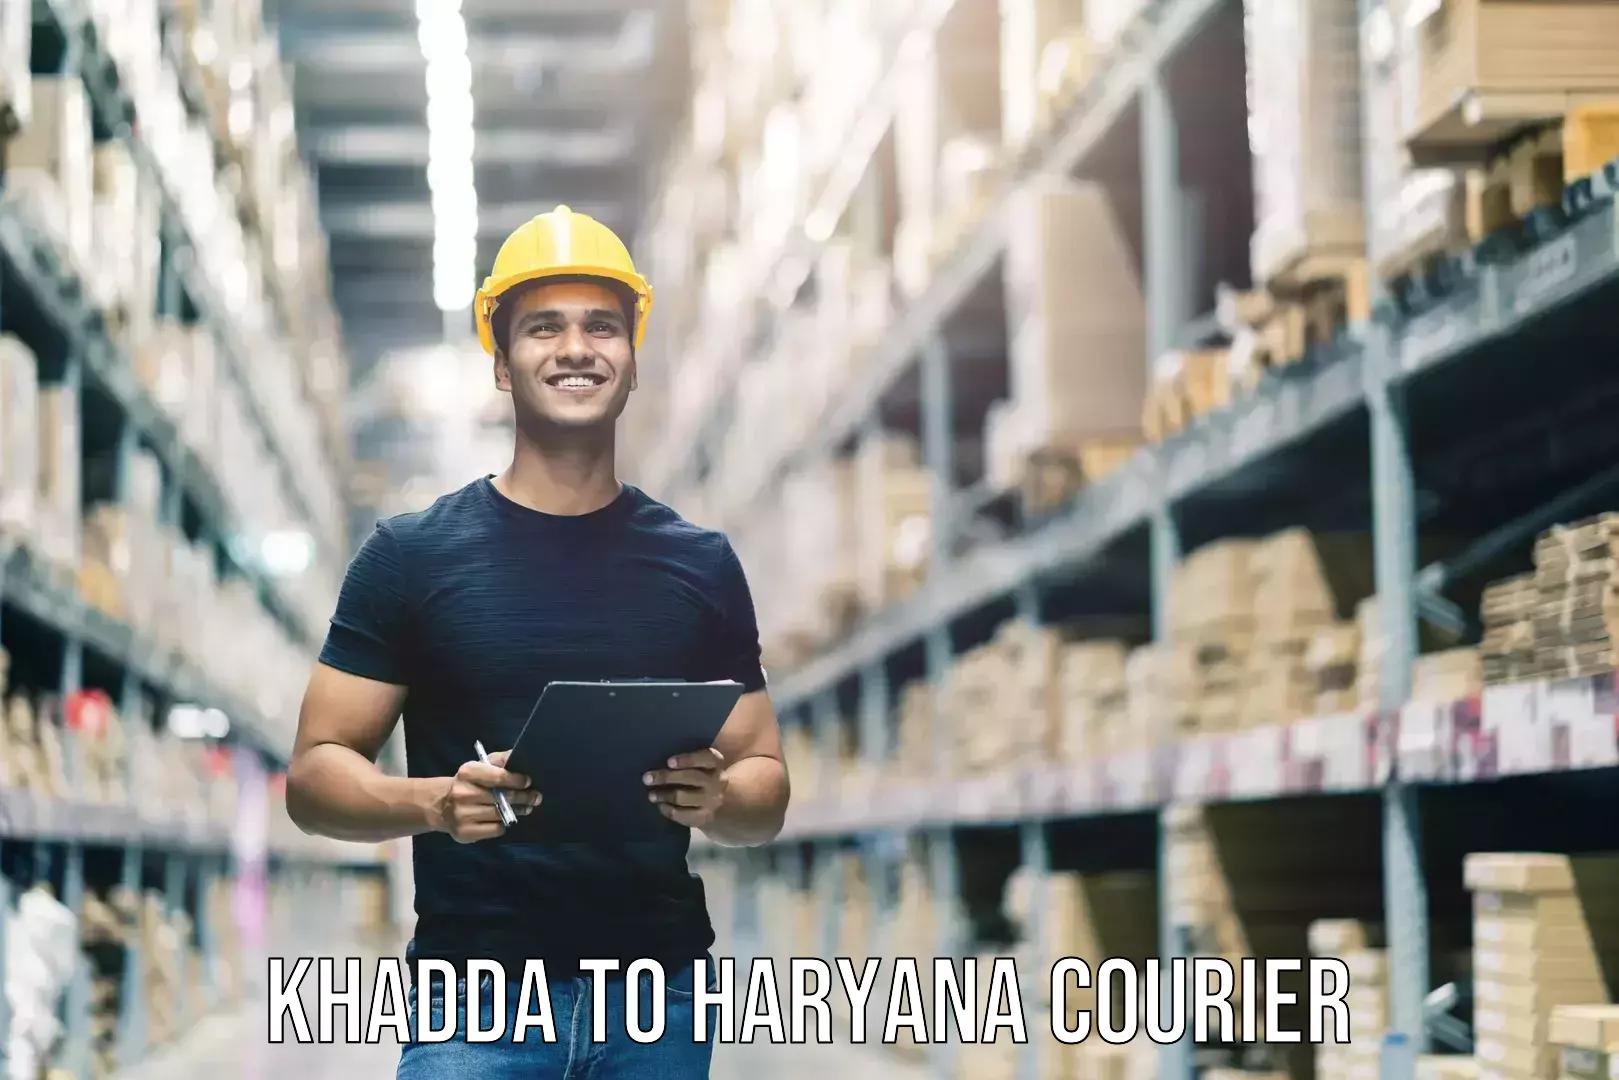 Baggage shipping service Khadda to NCR Haryana